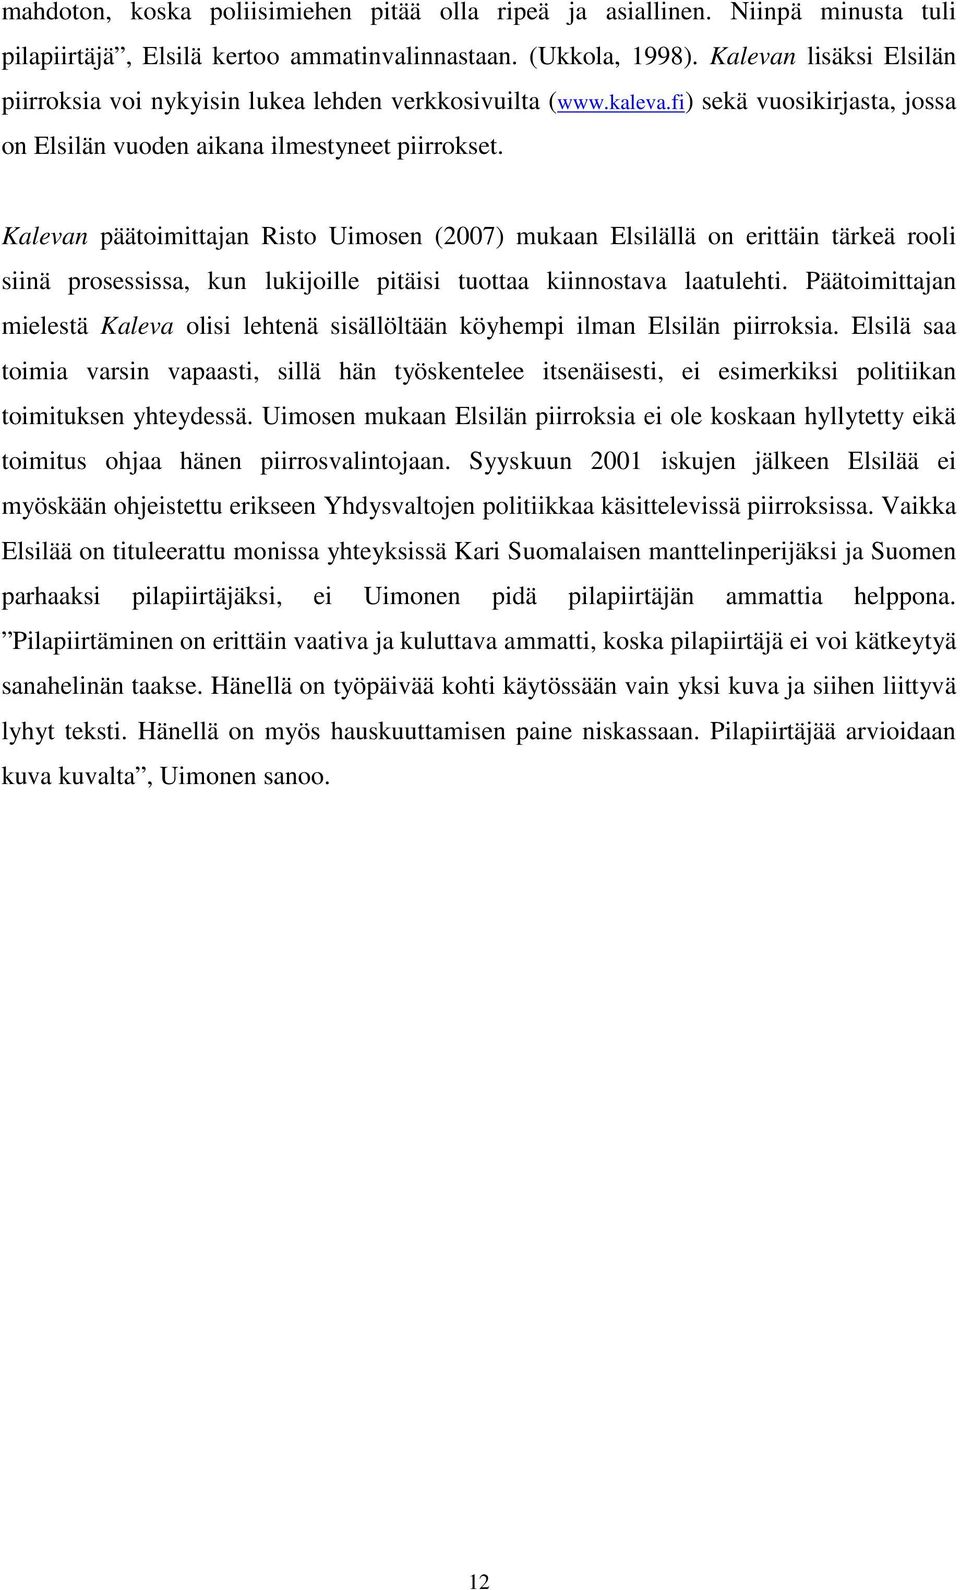 Kalevan päätoimittajan Risto Uimosen (2007) mukaan Elsilällä on erittäin tärkeä rooli siinä prosessissa, kun lukijoille pitäisi tuottaa kiinnostava laatulehti.